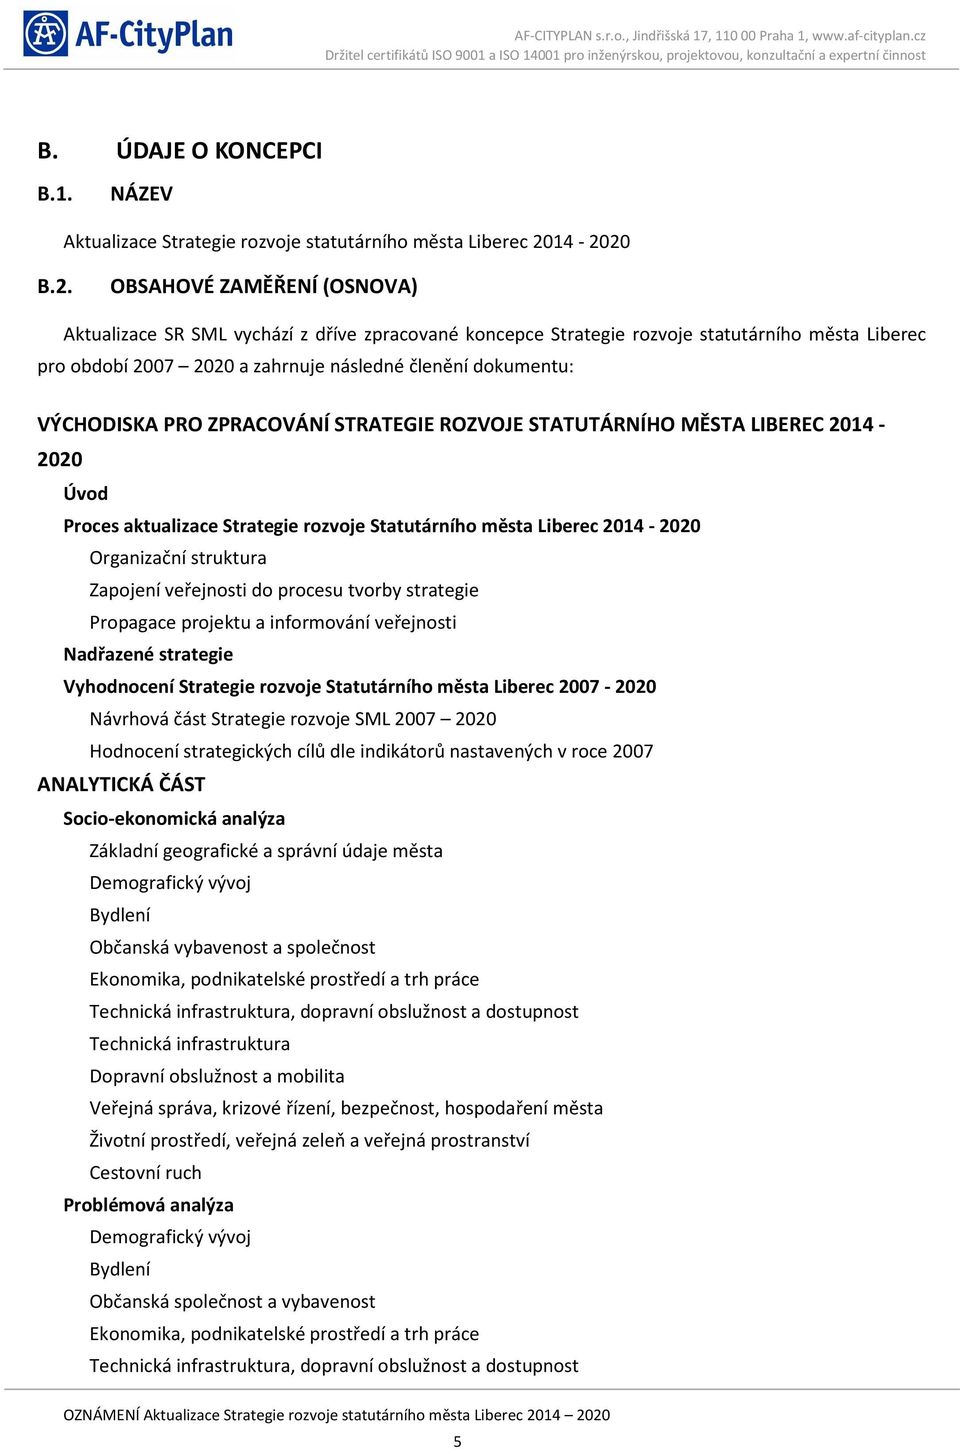 VÝCHODISKA PRO ZPRACOVÁNÍ STRATEGIE ROZVOJE STATUTÁRNÍHO MĚSTA LIBEREC 2014-2020 Úvod Proces aktualizace Strategie rozvoje Statutárního města Liberec 2014-2020 Organizační struktura Zapojení